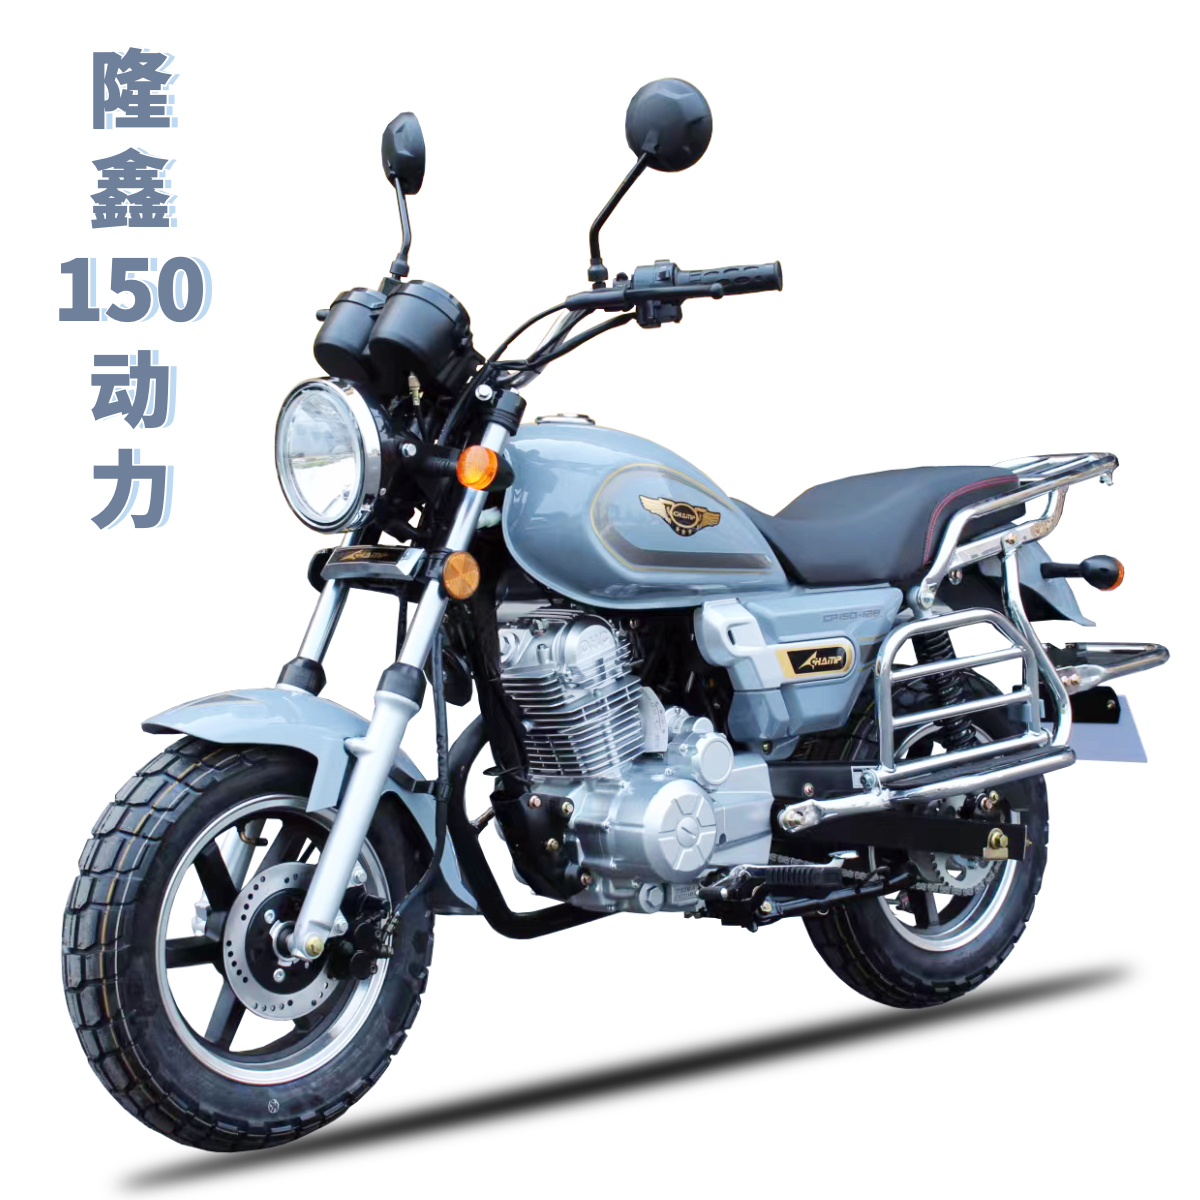 真新しい 23 Changbo Loncin 150 エンジンの Little Prince 燃料バイクは、男性でも女性でも乗りやすい薄型で、登録可能です。